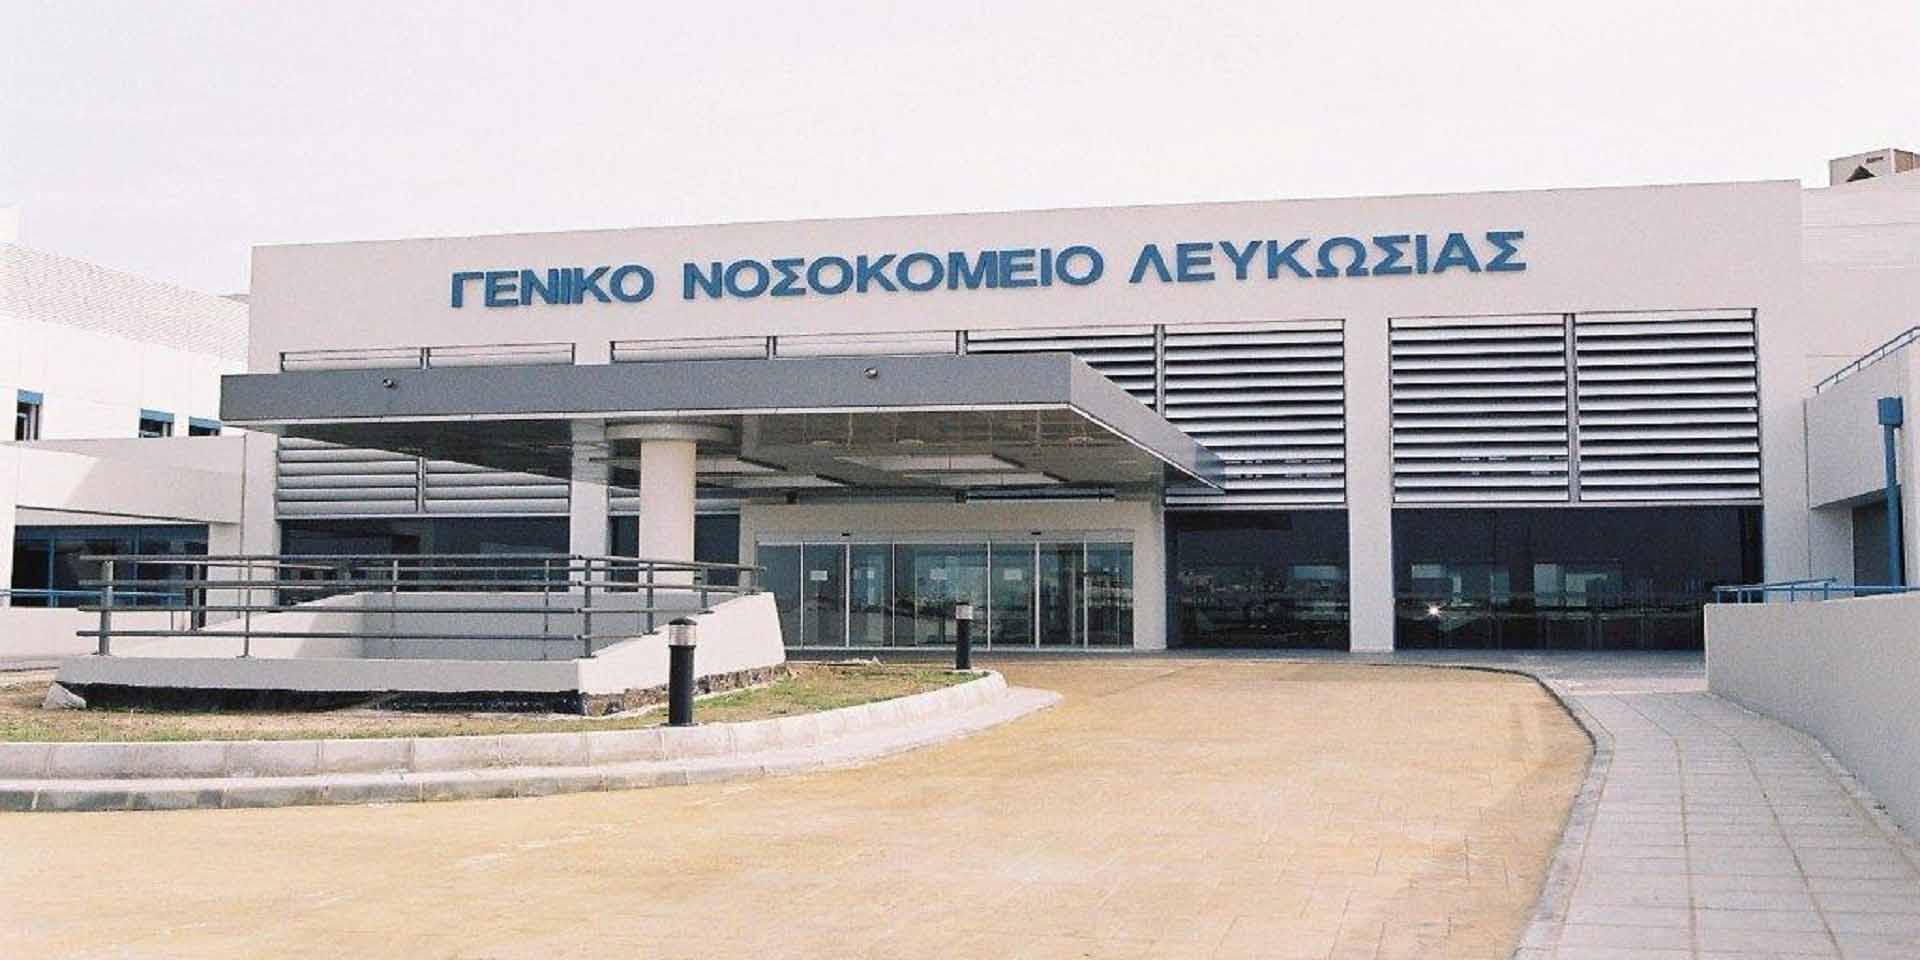 Σήμανε «συναγερμός» για περιστατικό θρόμβωσης σε 39χρονη- Νοσηλεύεται σε σοβαρή κατάσταση στο Νοσοκομείο Λευκωσίας